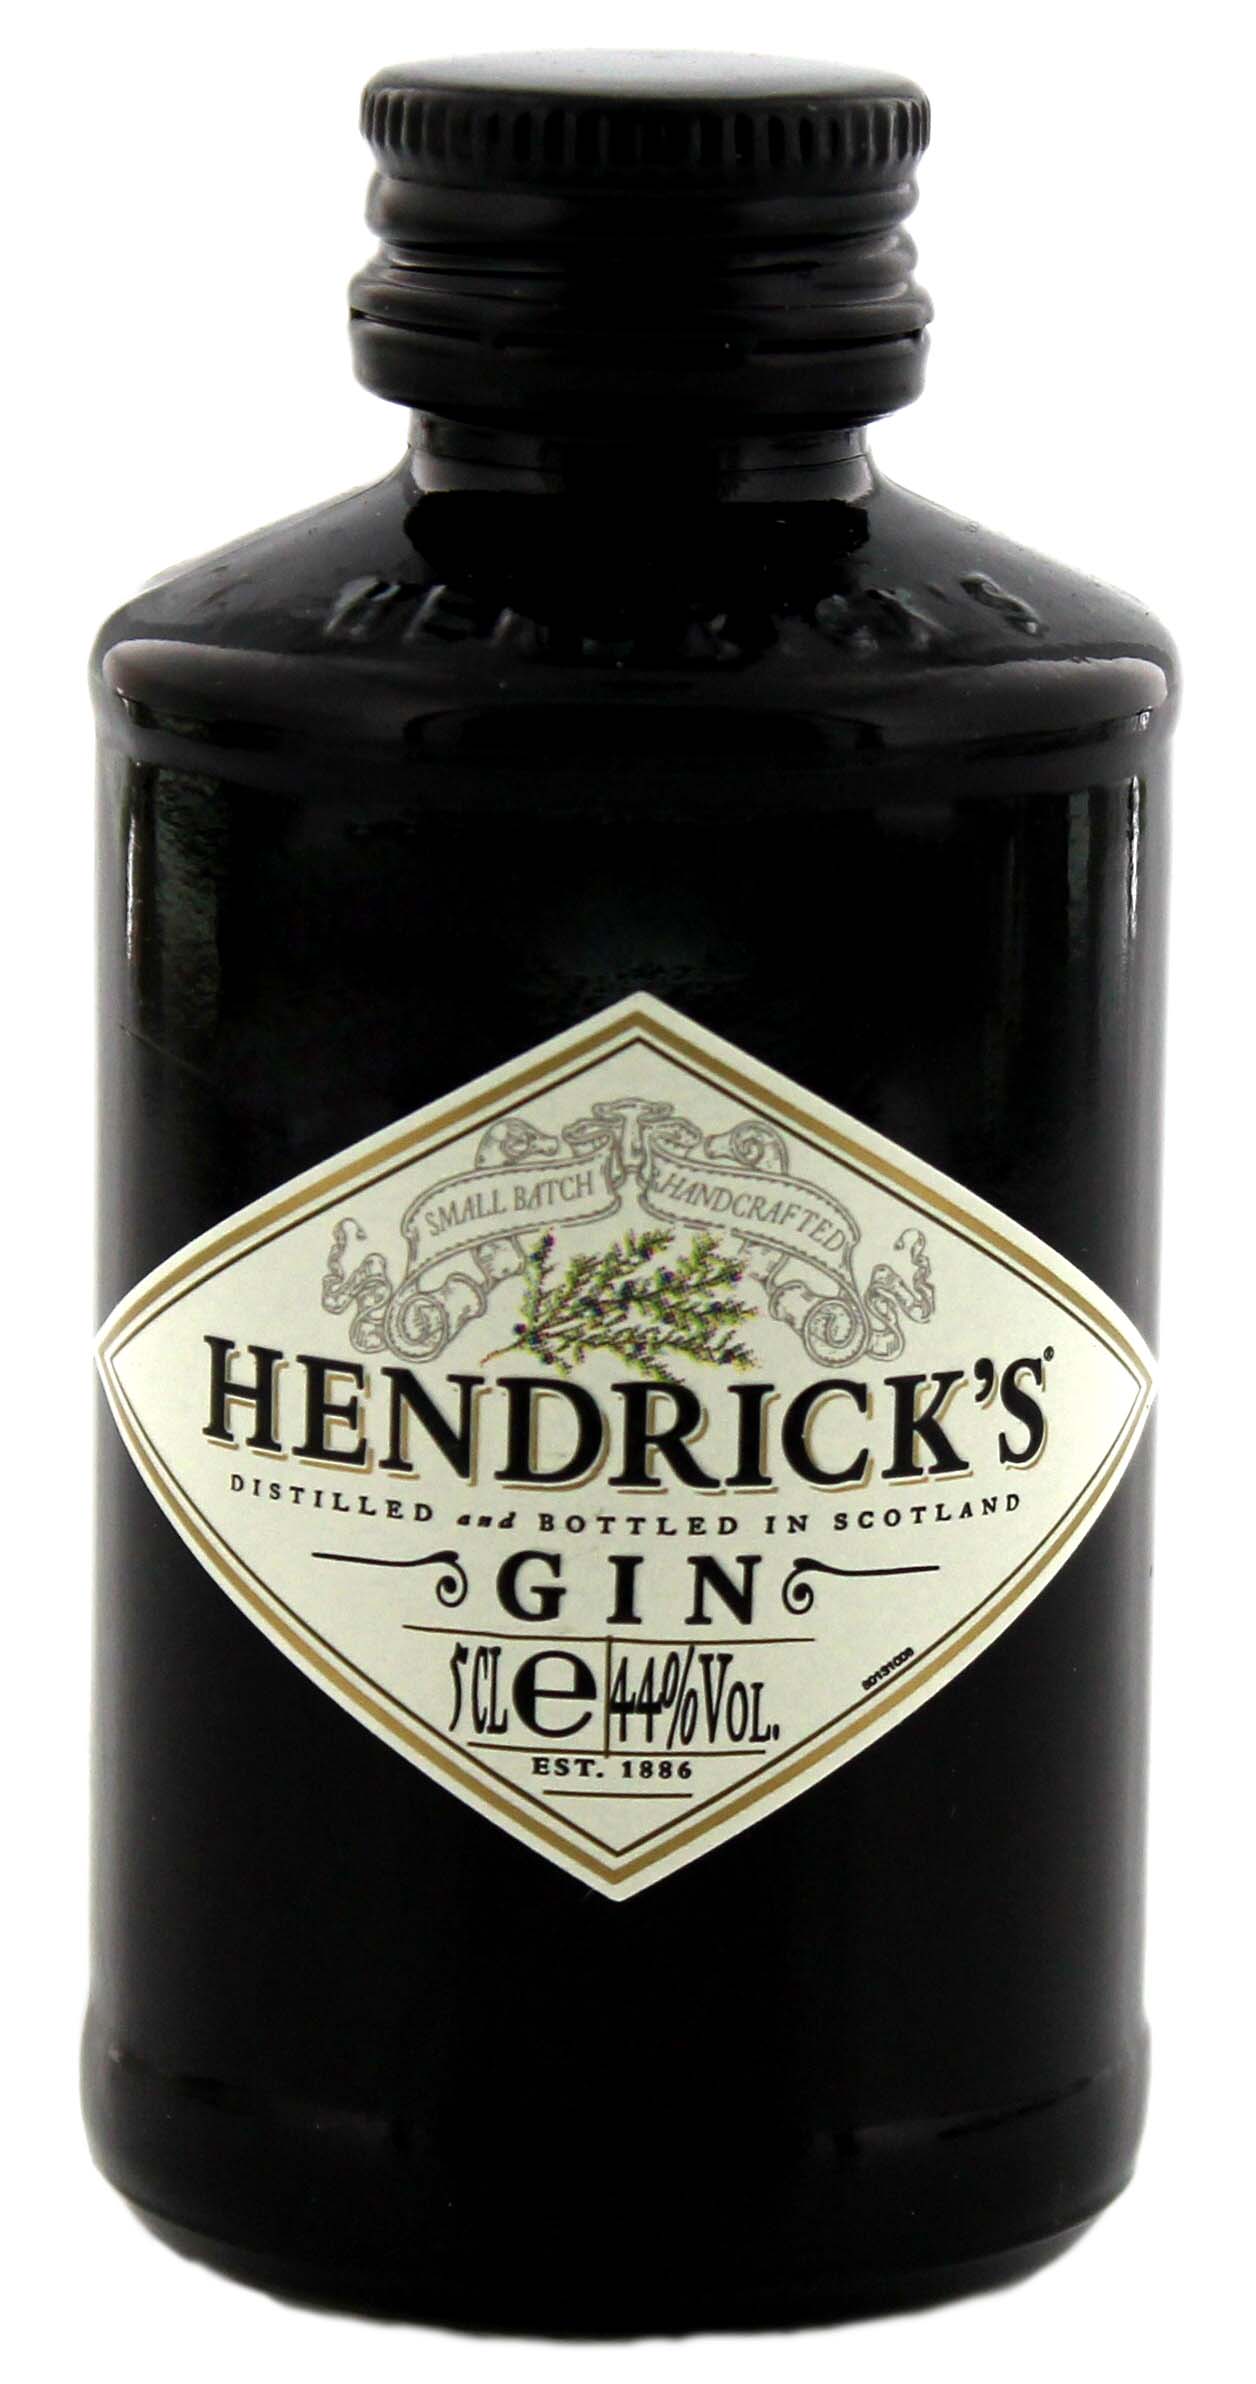 Hendricks Gin Miniatur jetzt kaufen! Gin Online Shop & Spirituosen